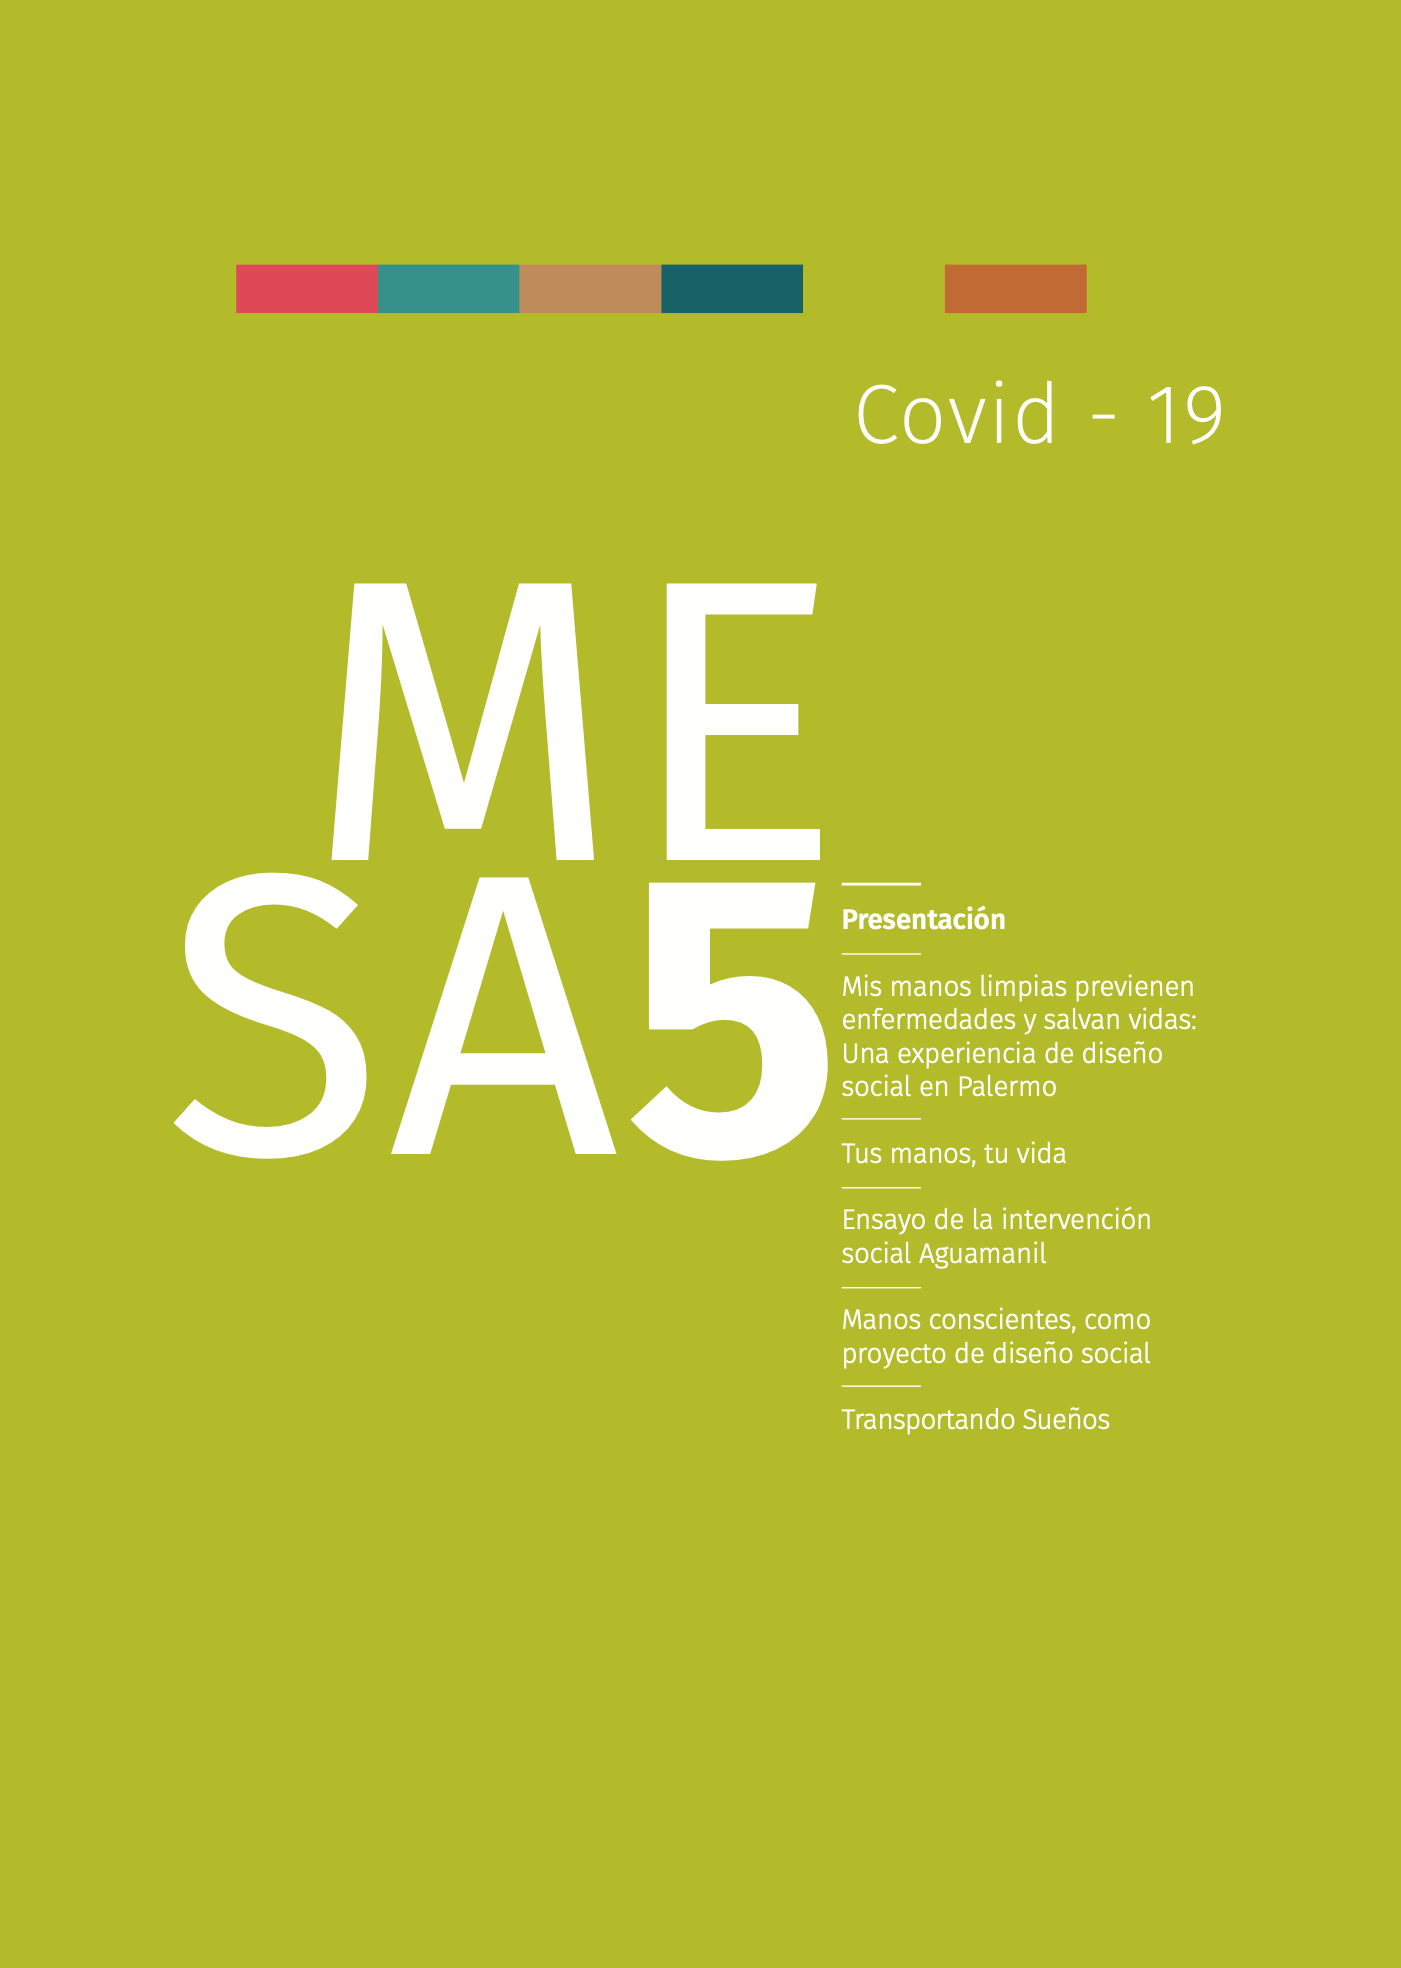 MESA COVID-19